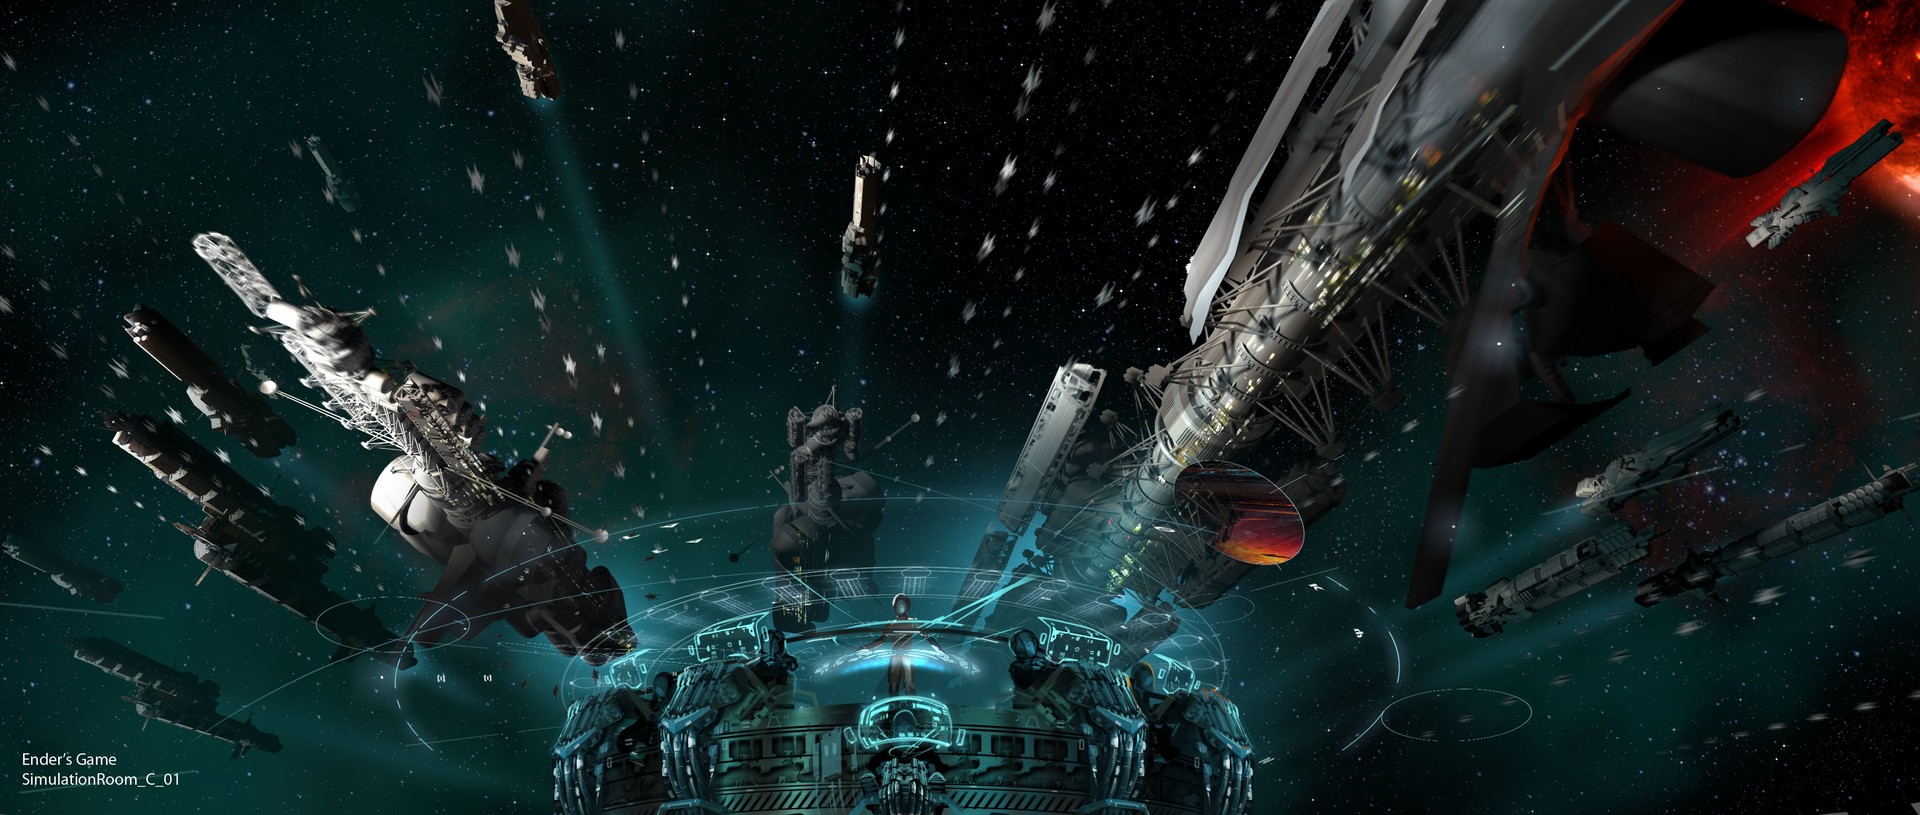 电影 Ender's Game 概念艺术作品-David Levy-27.jpg